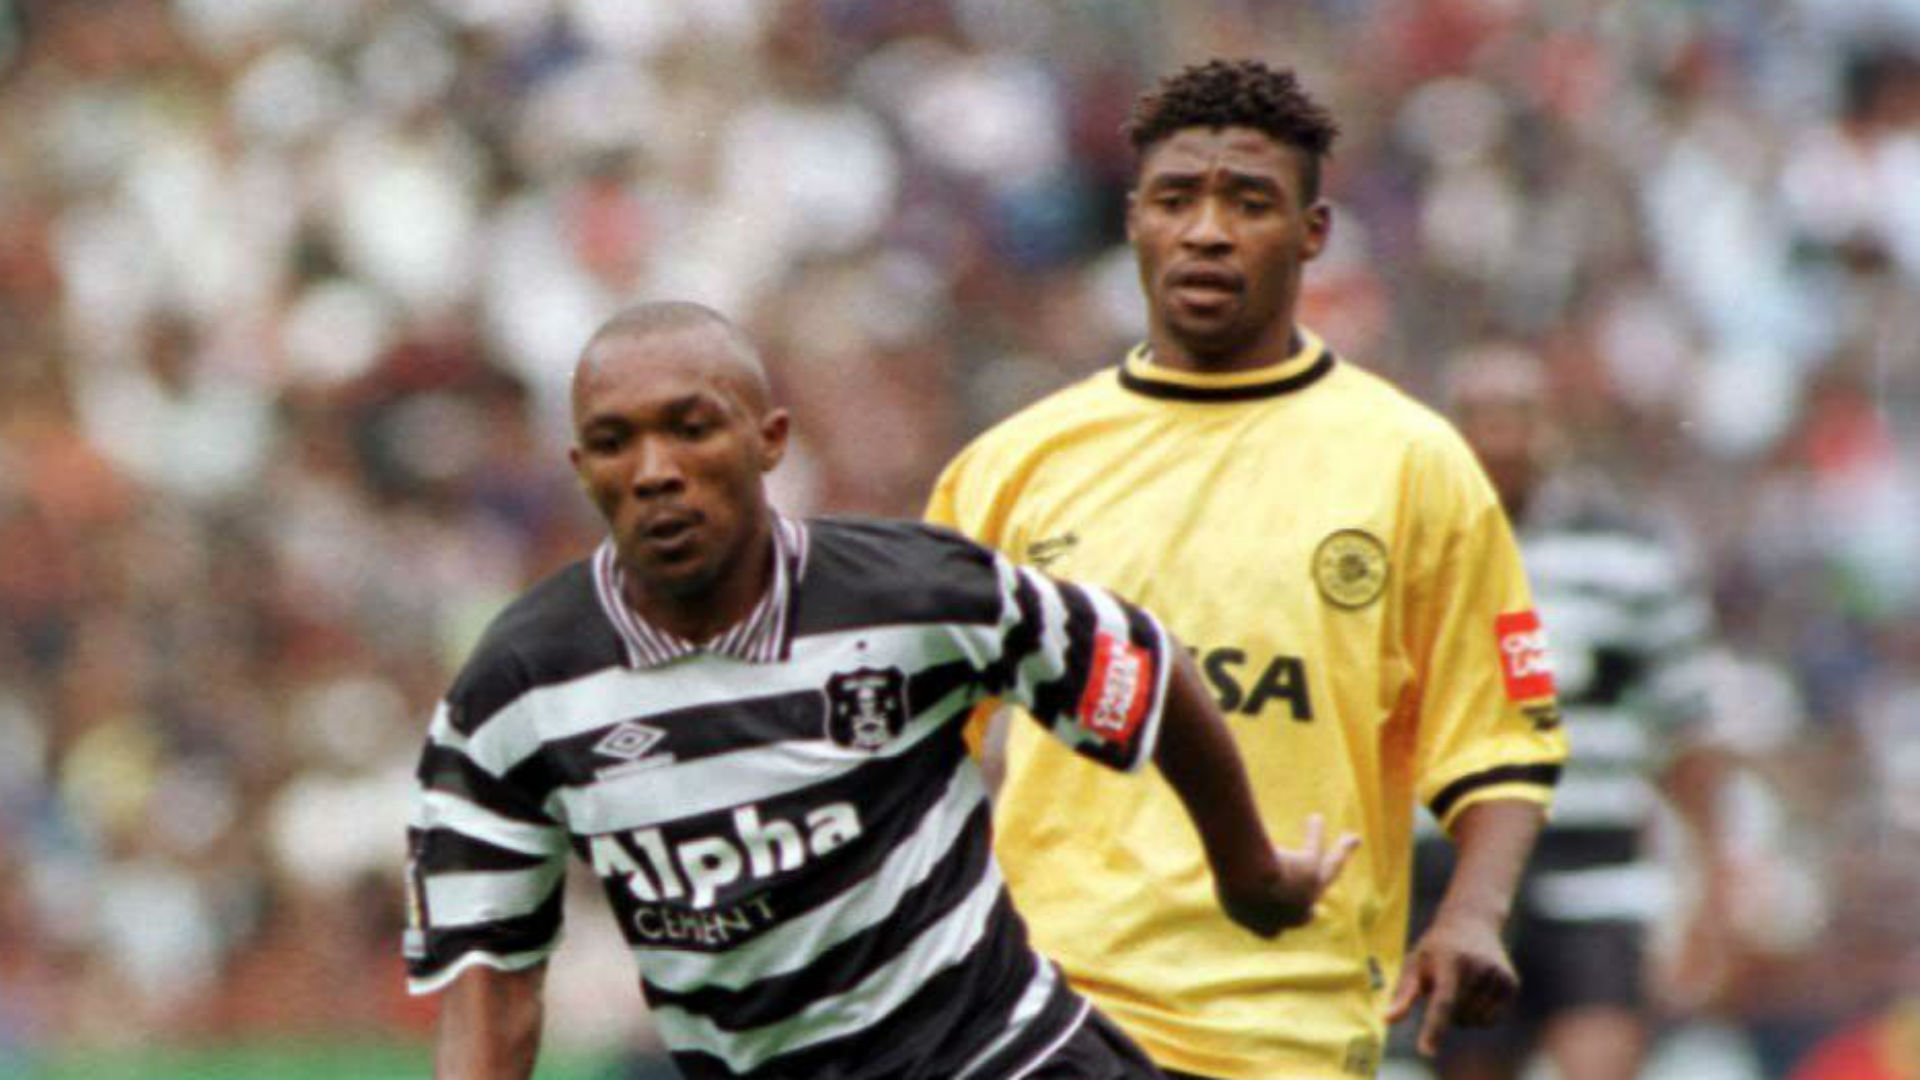 Clifford Moleko and Pollen Ndlanya - Chiefs vs Pirates - Goal.com1920 x 1080